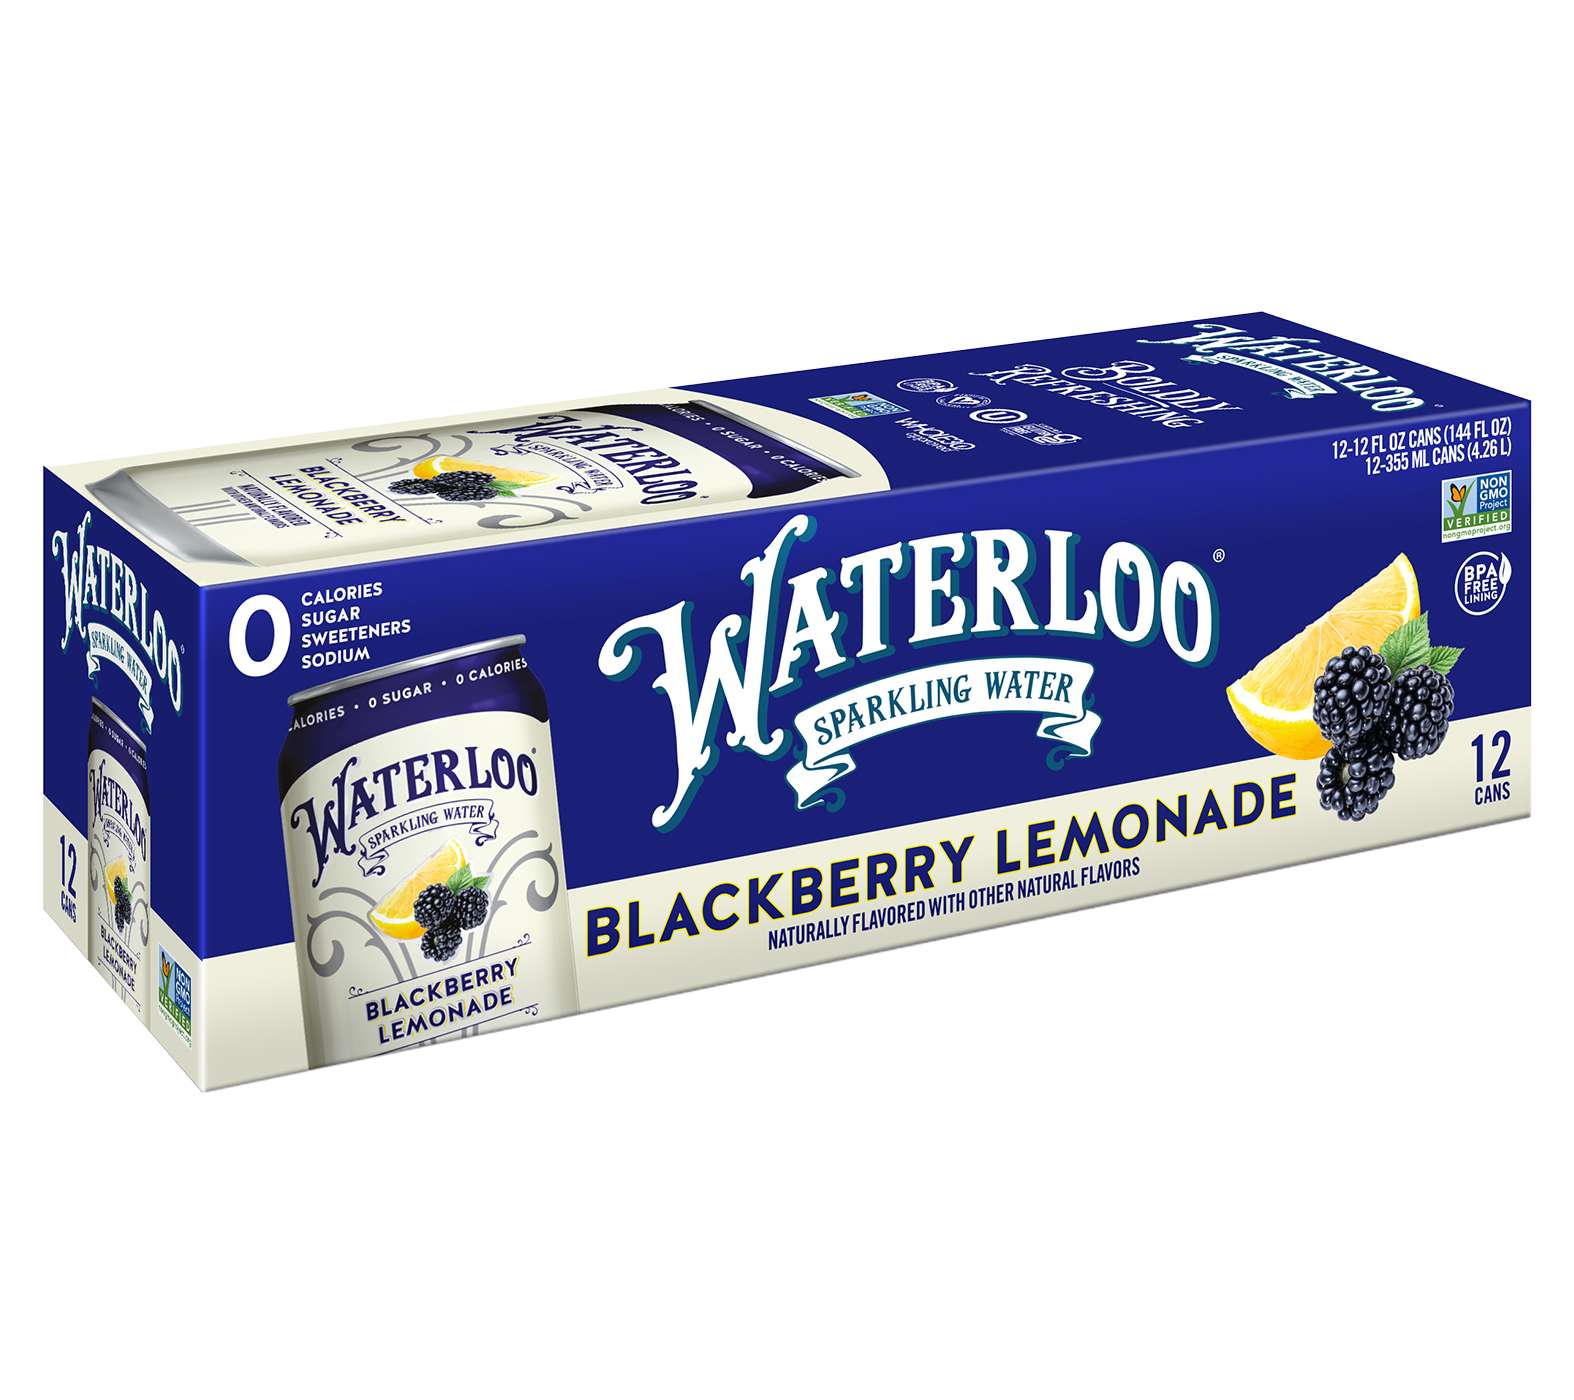 Waterloo Blackberry Lemonade Sparkling Water 12 oz Cans; image 2 of 3